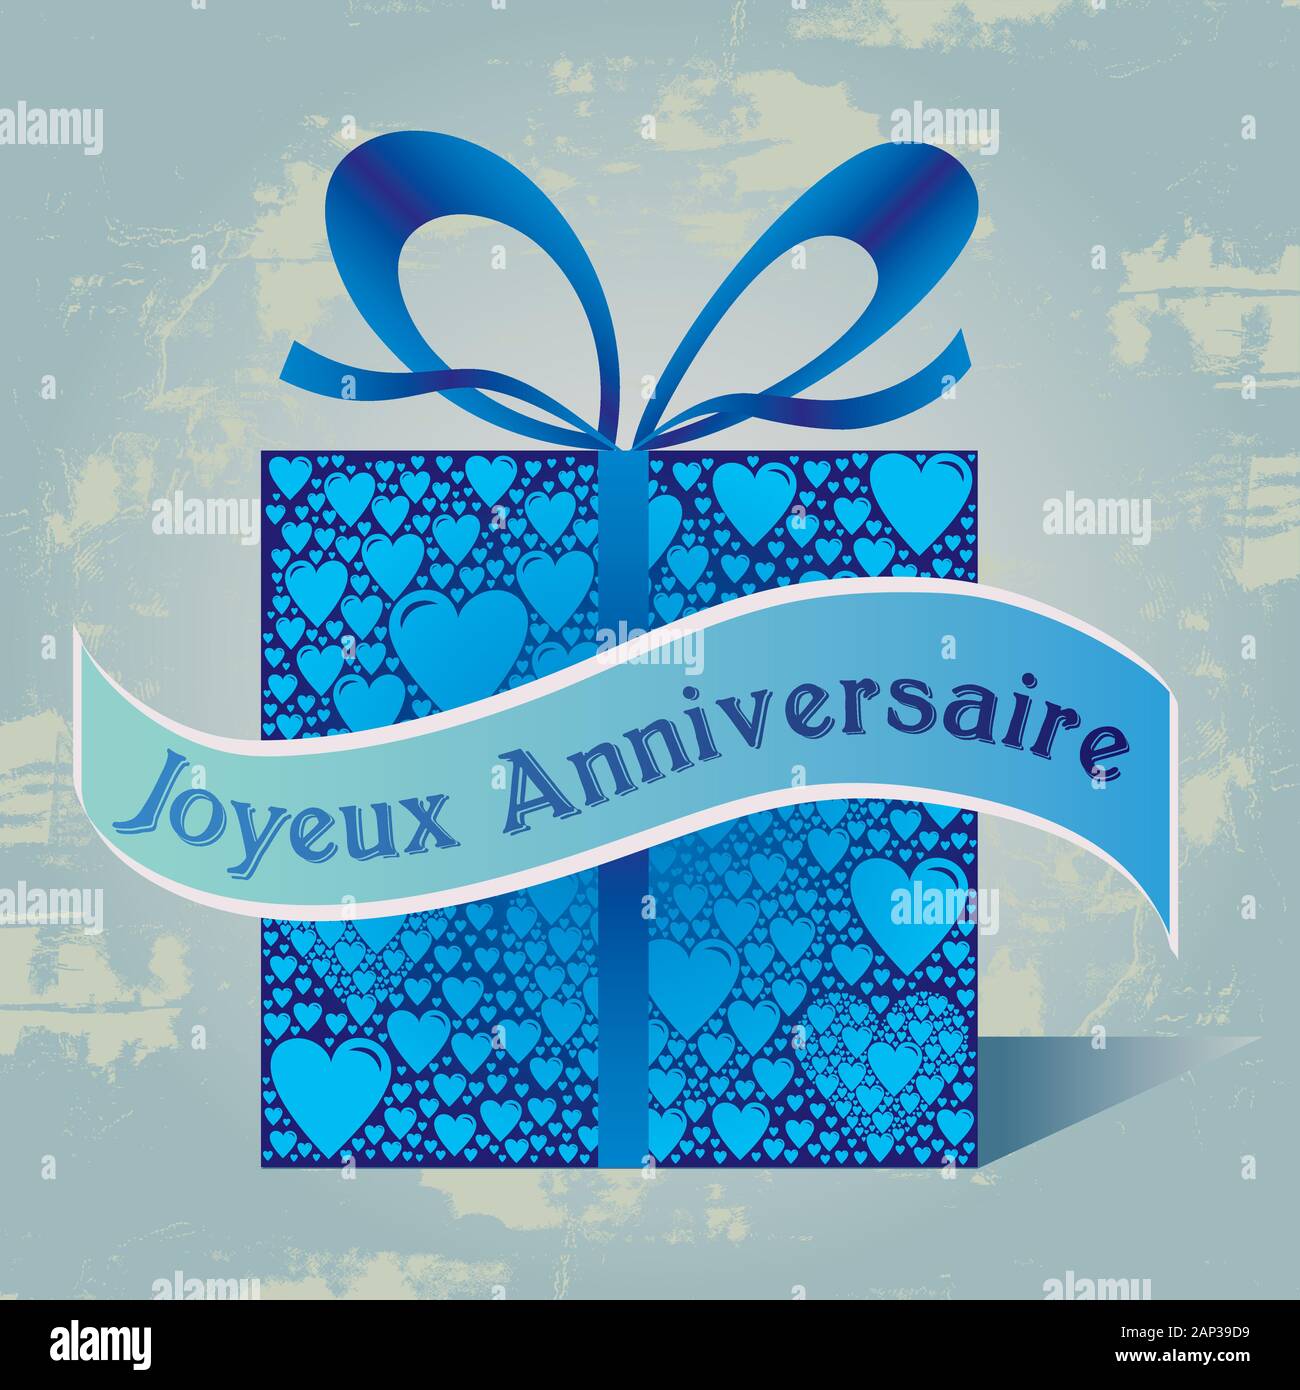 Boîte cadeau joyeux anniversaire texte français avec motif coeur et ruban en bleu Grunge Vintage Retro Background Illustration de Vecteur